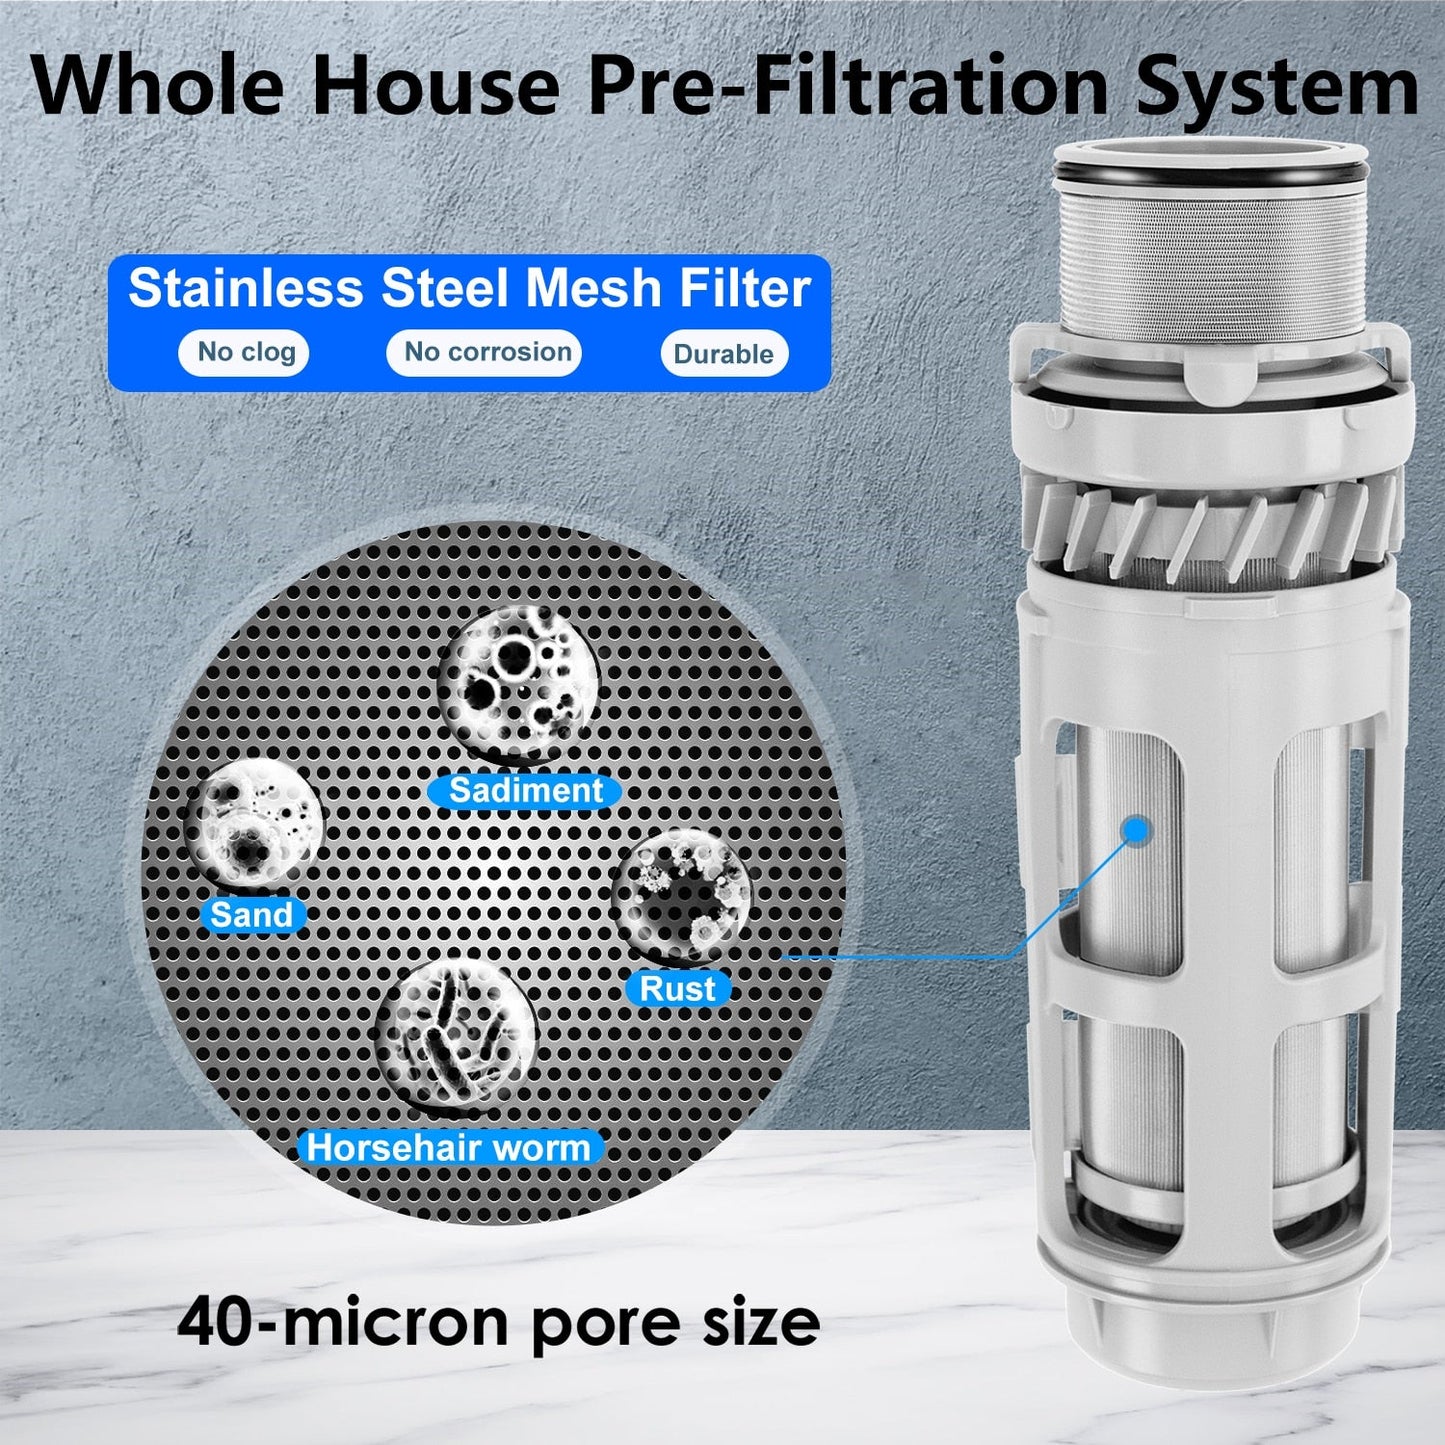 ALTHY PRE-AUTO2 Prefiltro de retrolavado automático Filtro de agua de sedimentos giratorio Sistema purificador central para toda la casa